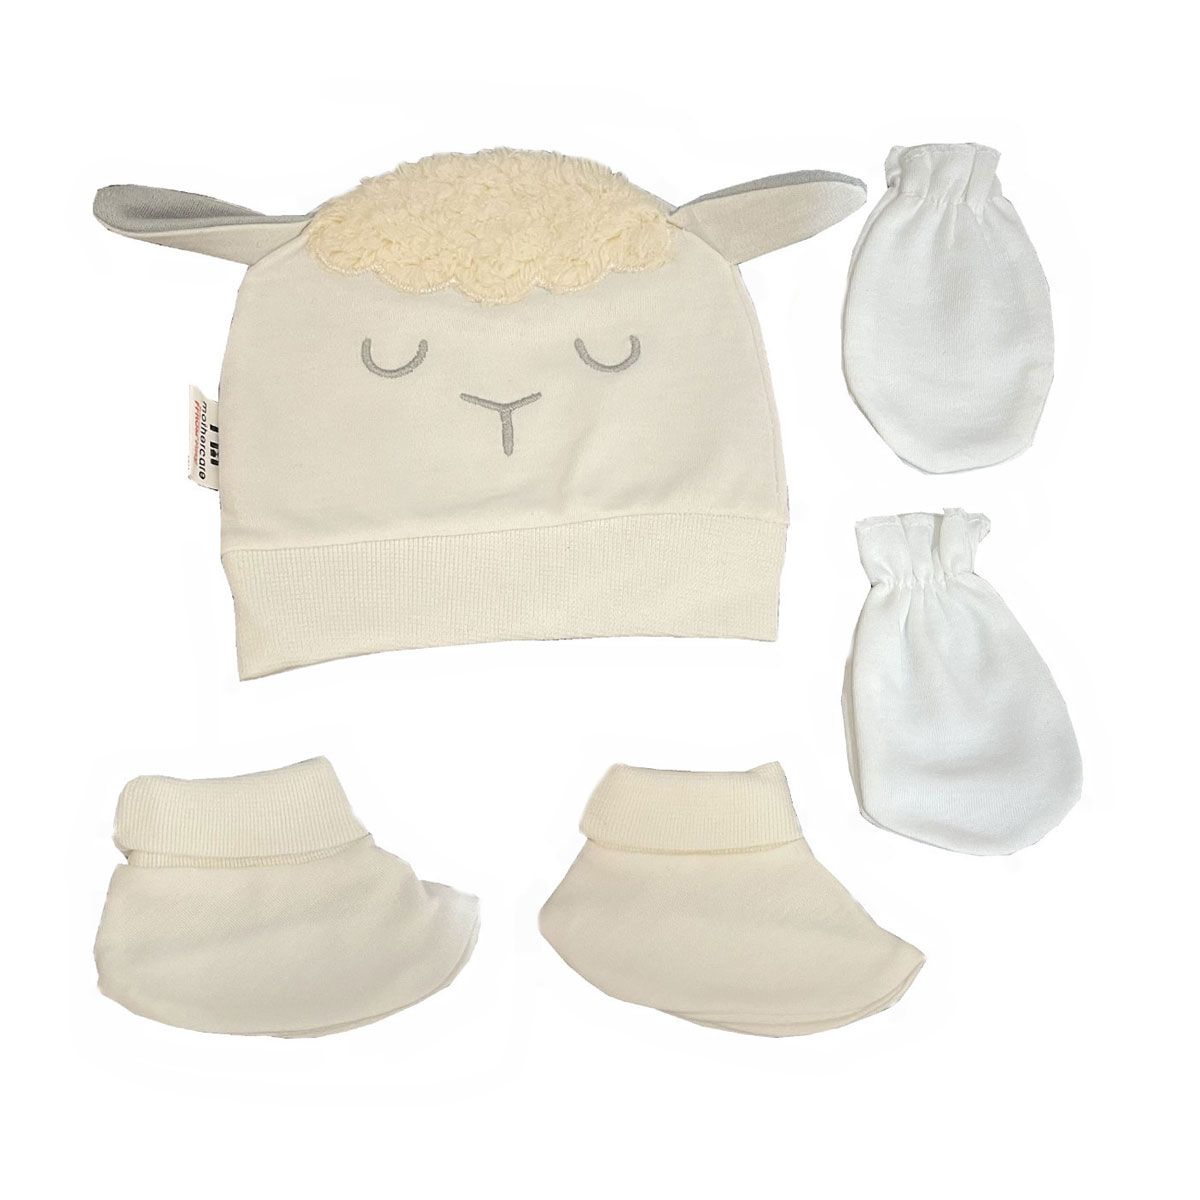  ست کلاه و دستکش و پاپوش نوزادی مادرکر مدل sheep -  - 1